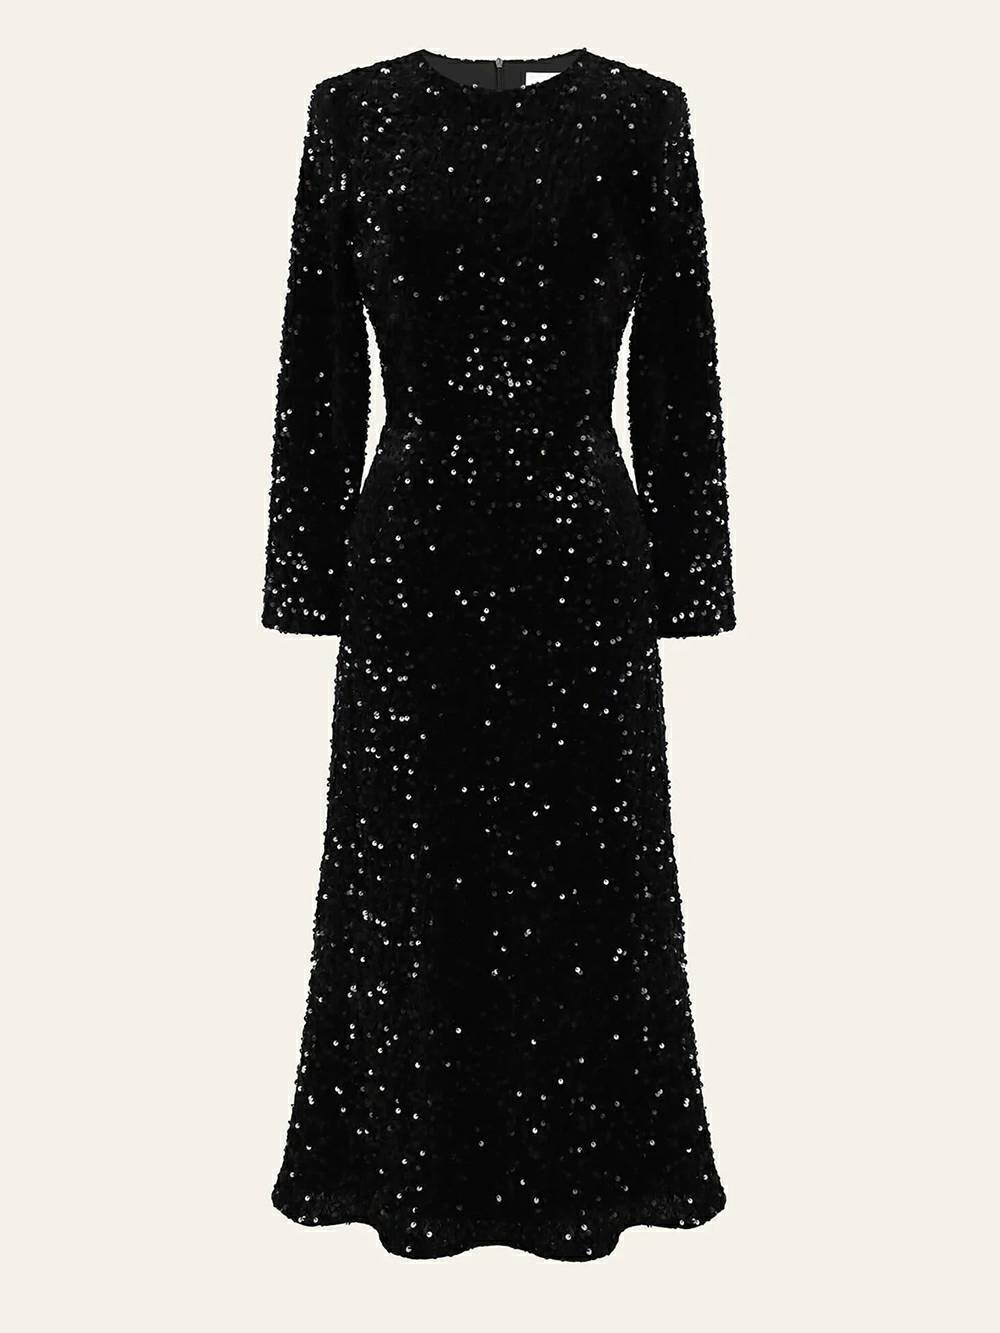 Aksamitna sukienka midi zdobiona cekinami w kolorze czarnym